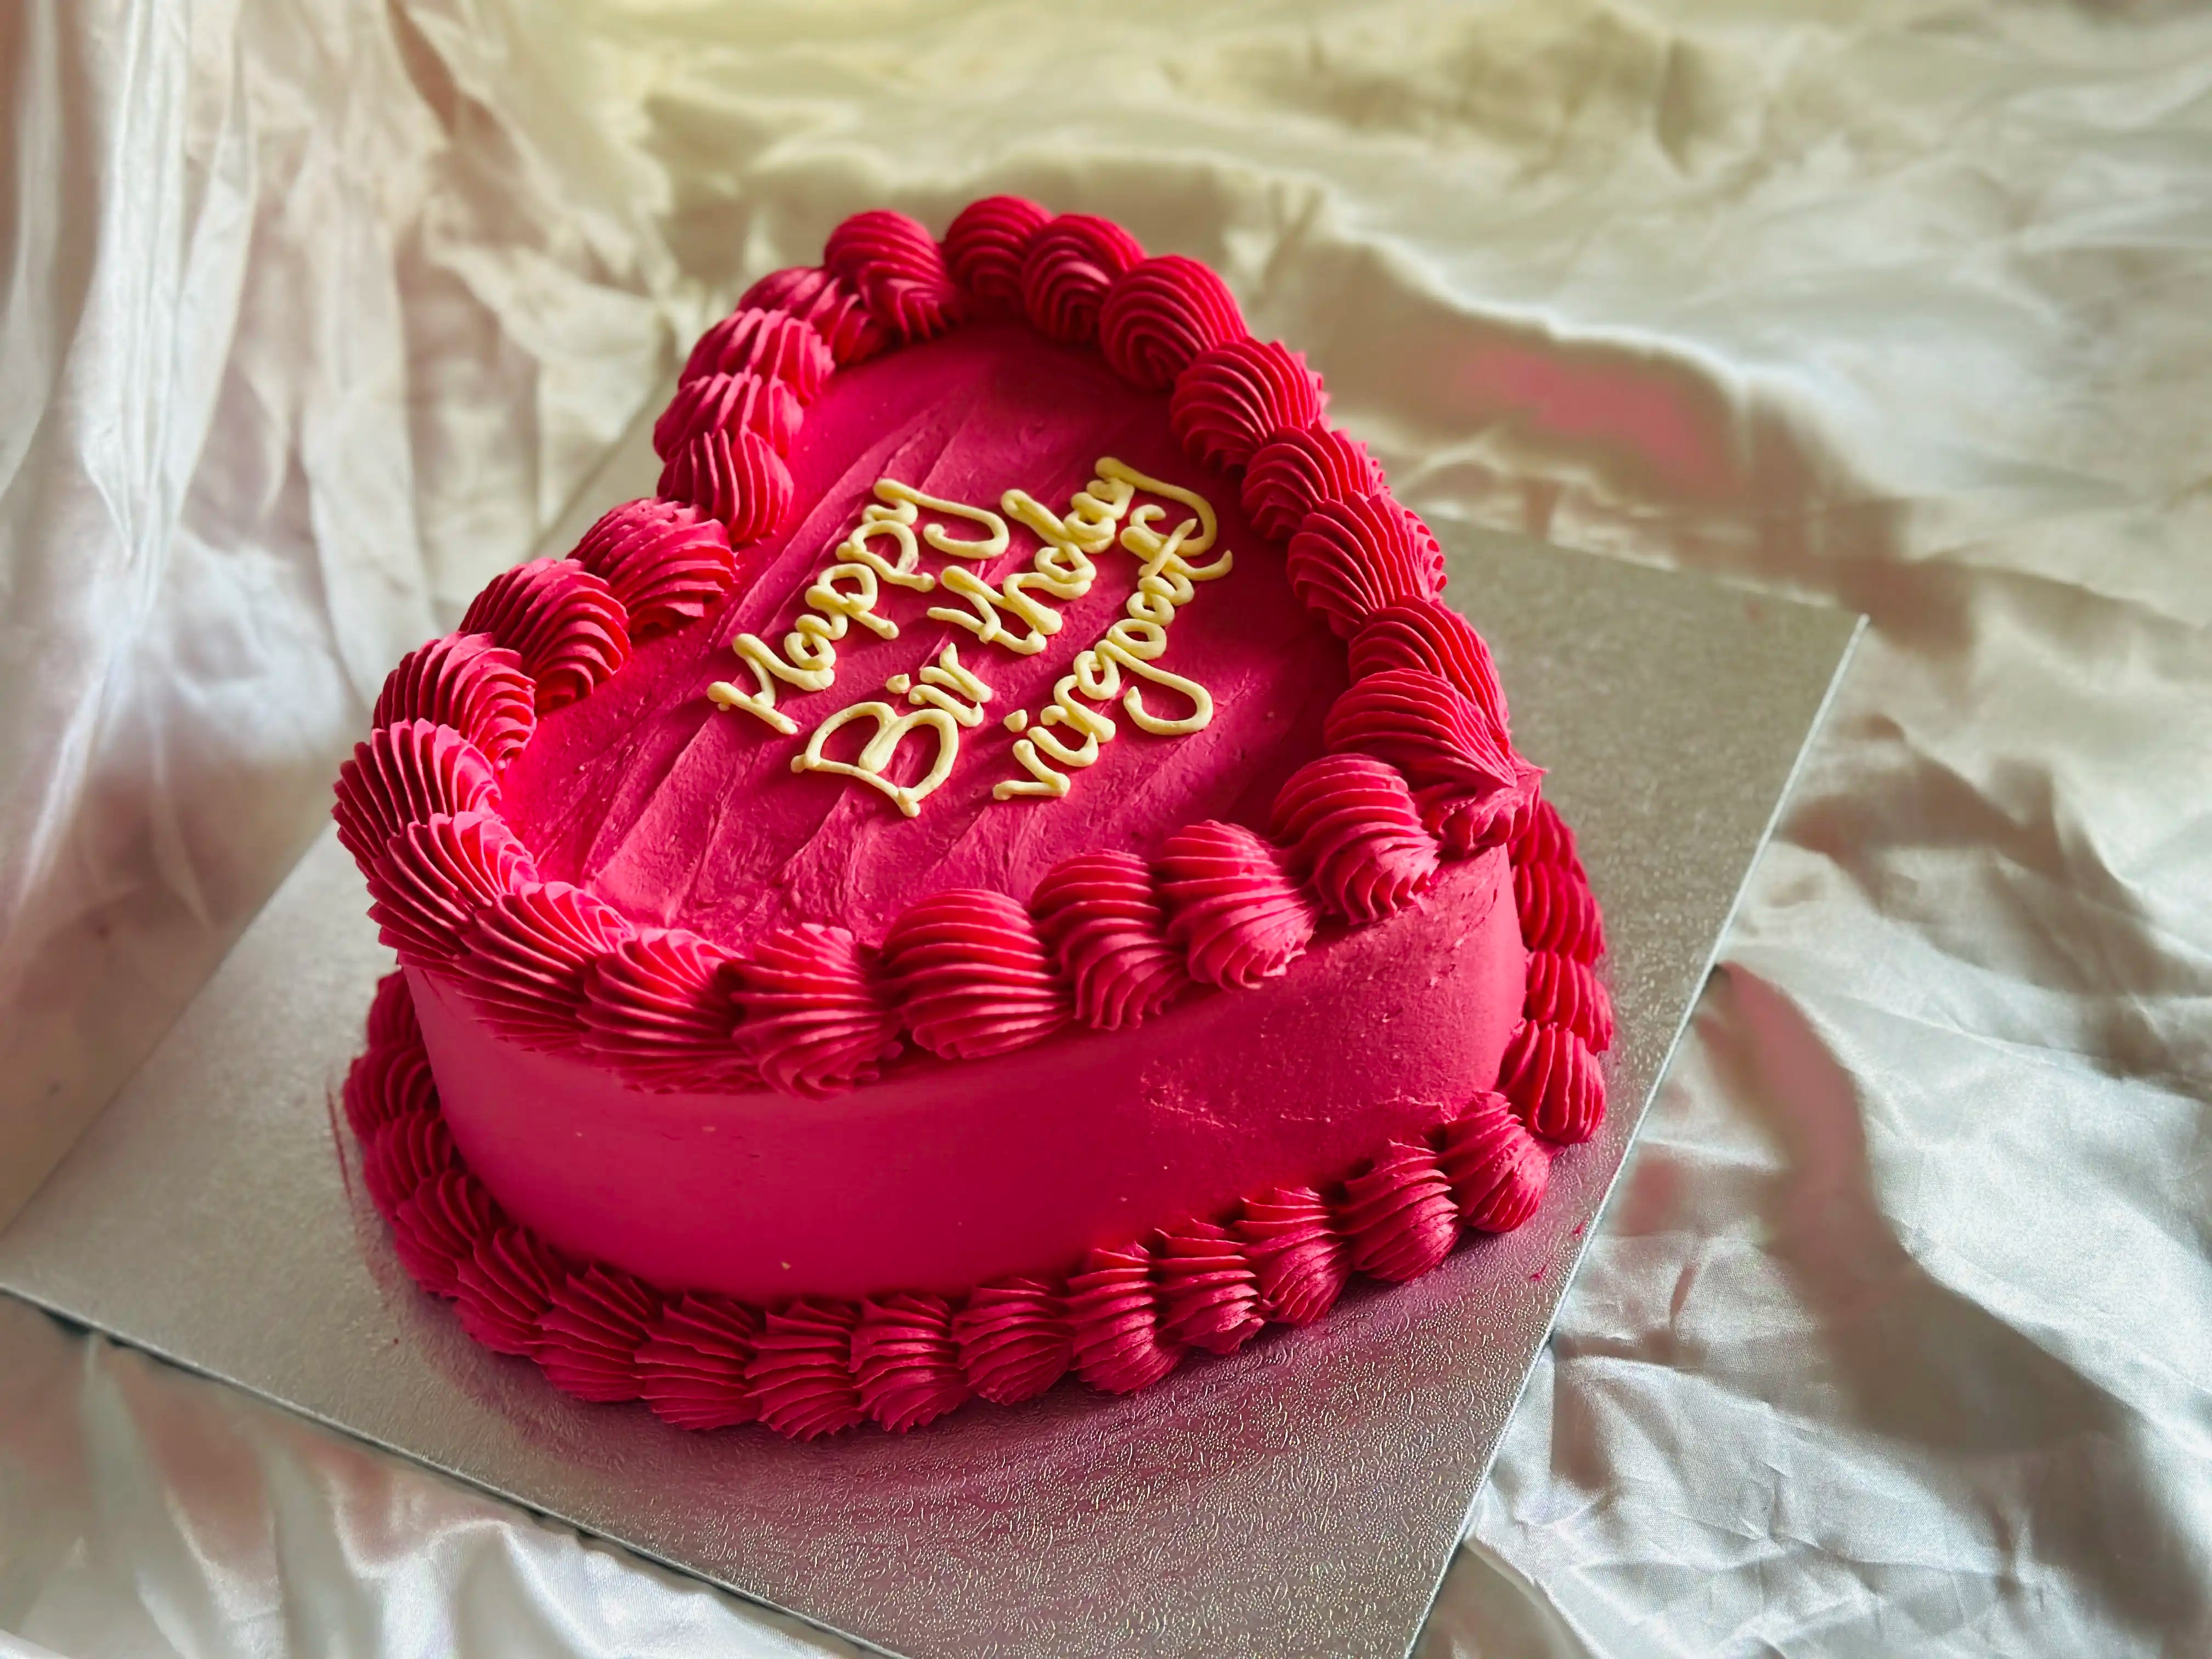 BUY Red Velvet Love Heart Shaped Cake in Online Shopping - Clickere